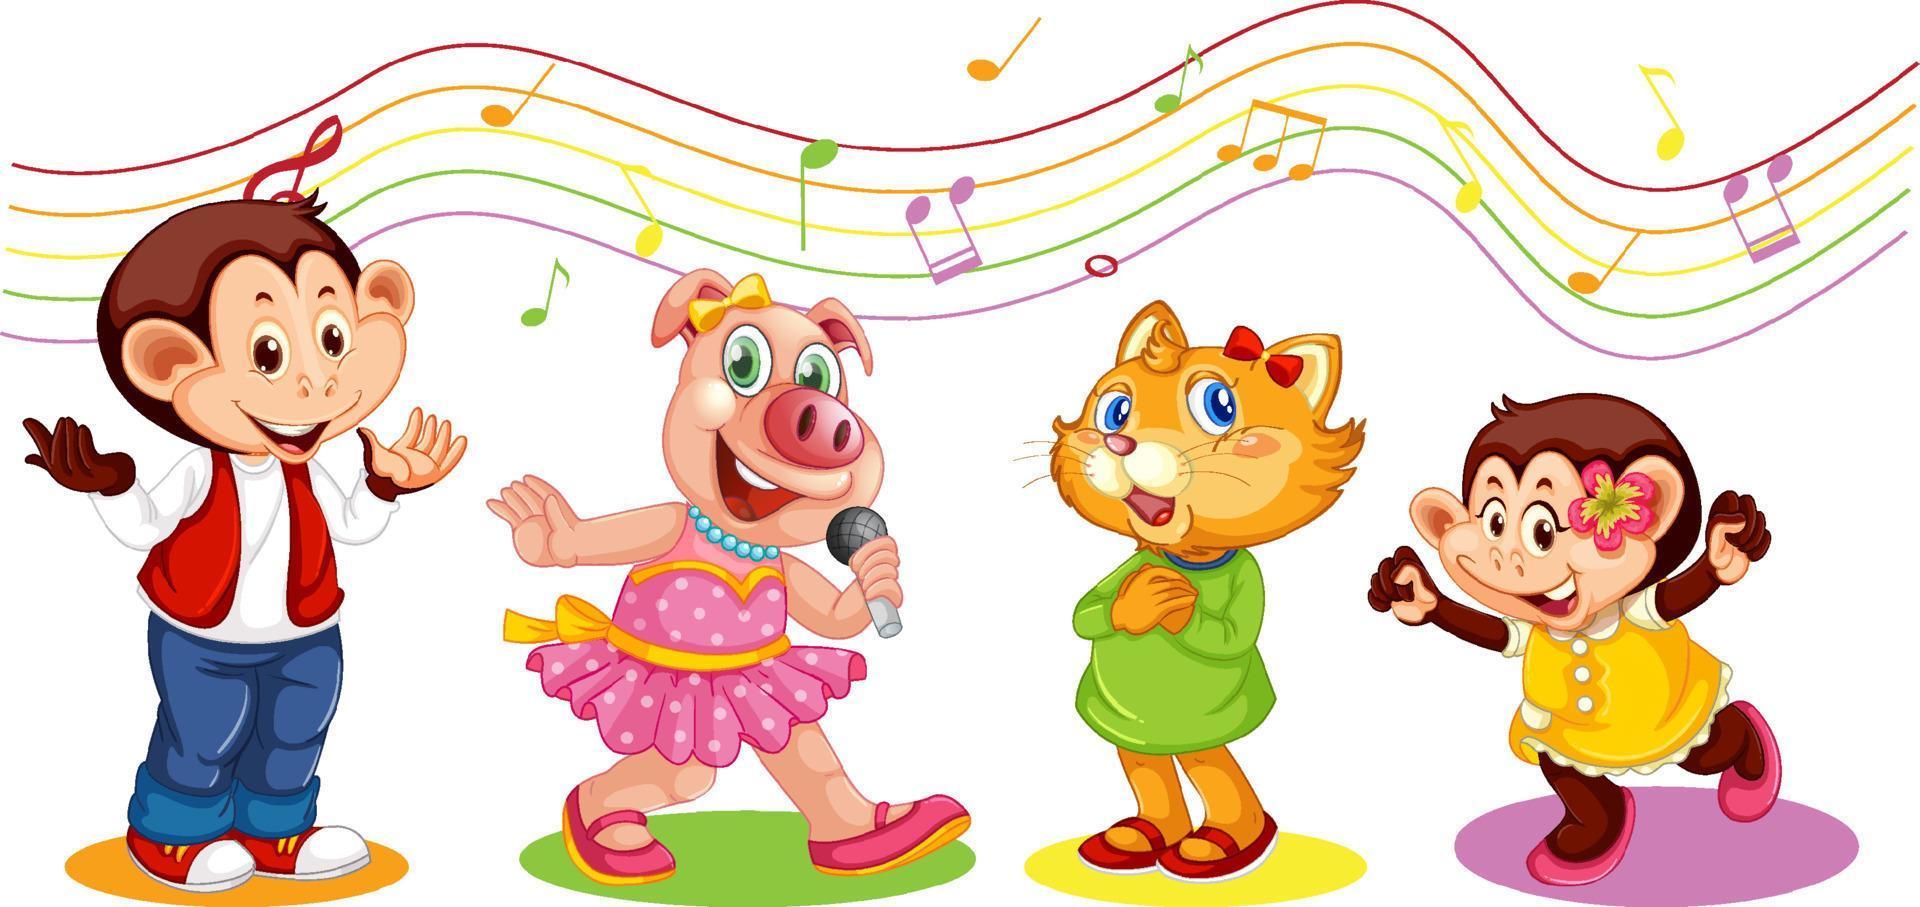 animais fofos personagem de desenho animado com símbolos de melodia musical vetor